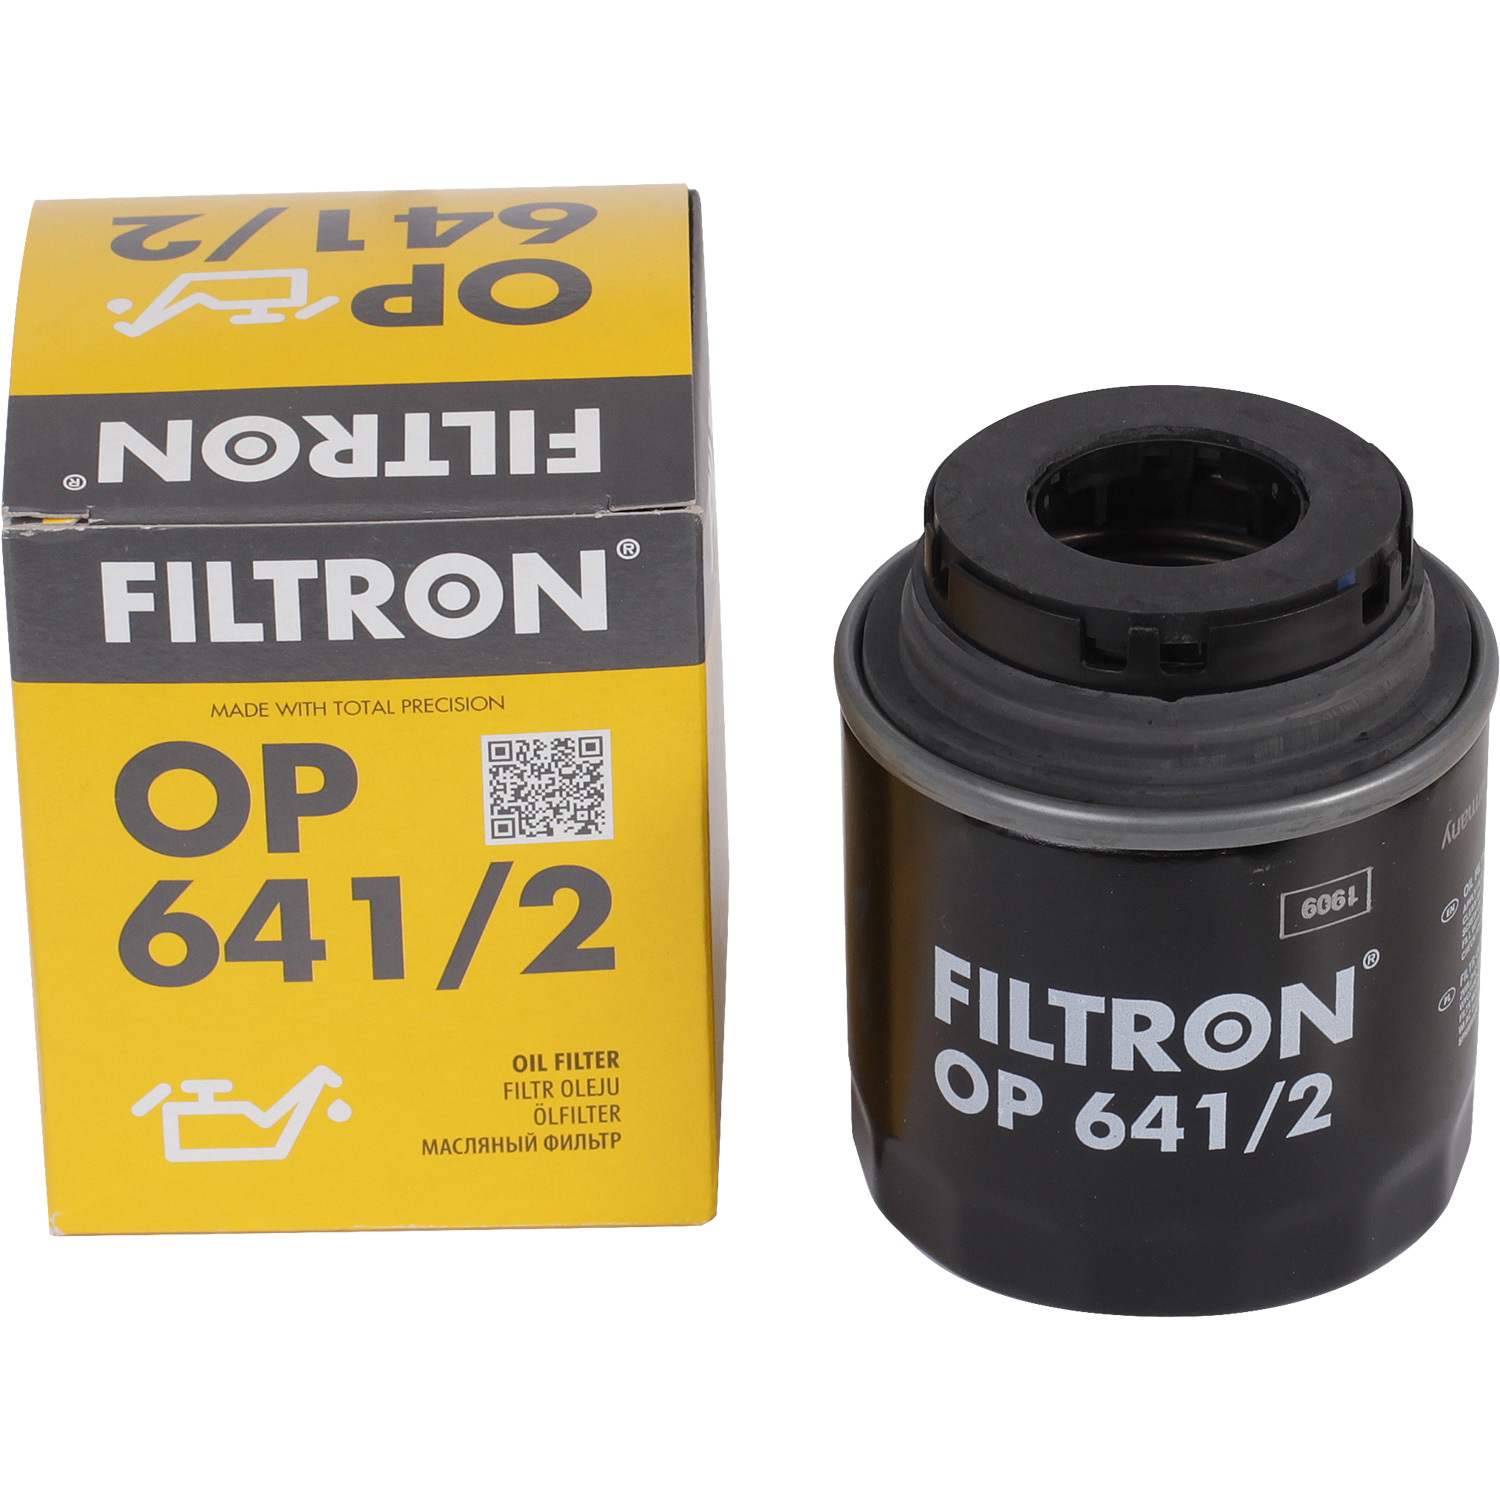 Фильтры Filtron Фильтр масляный Filtron OP6412 фильтры filtron фильтр масляный filtron op641